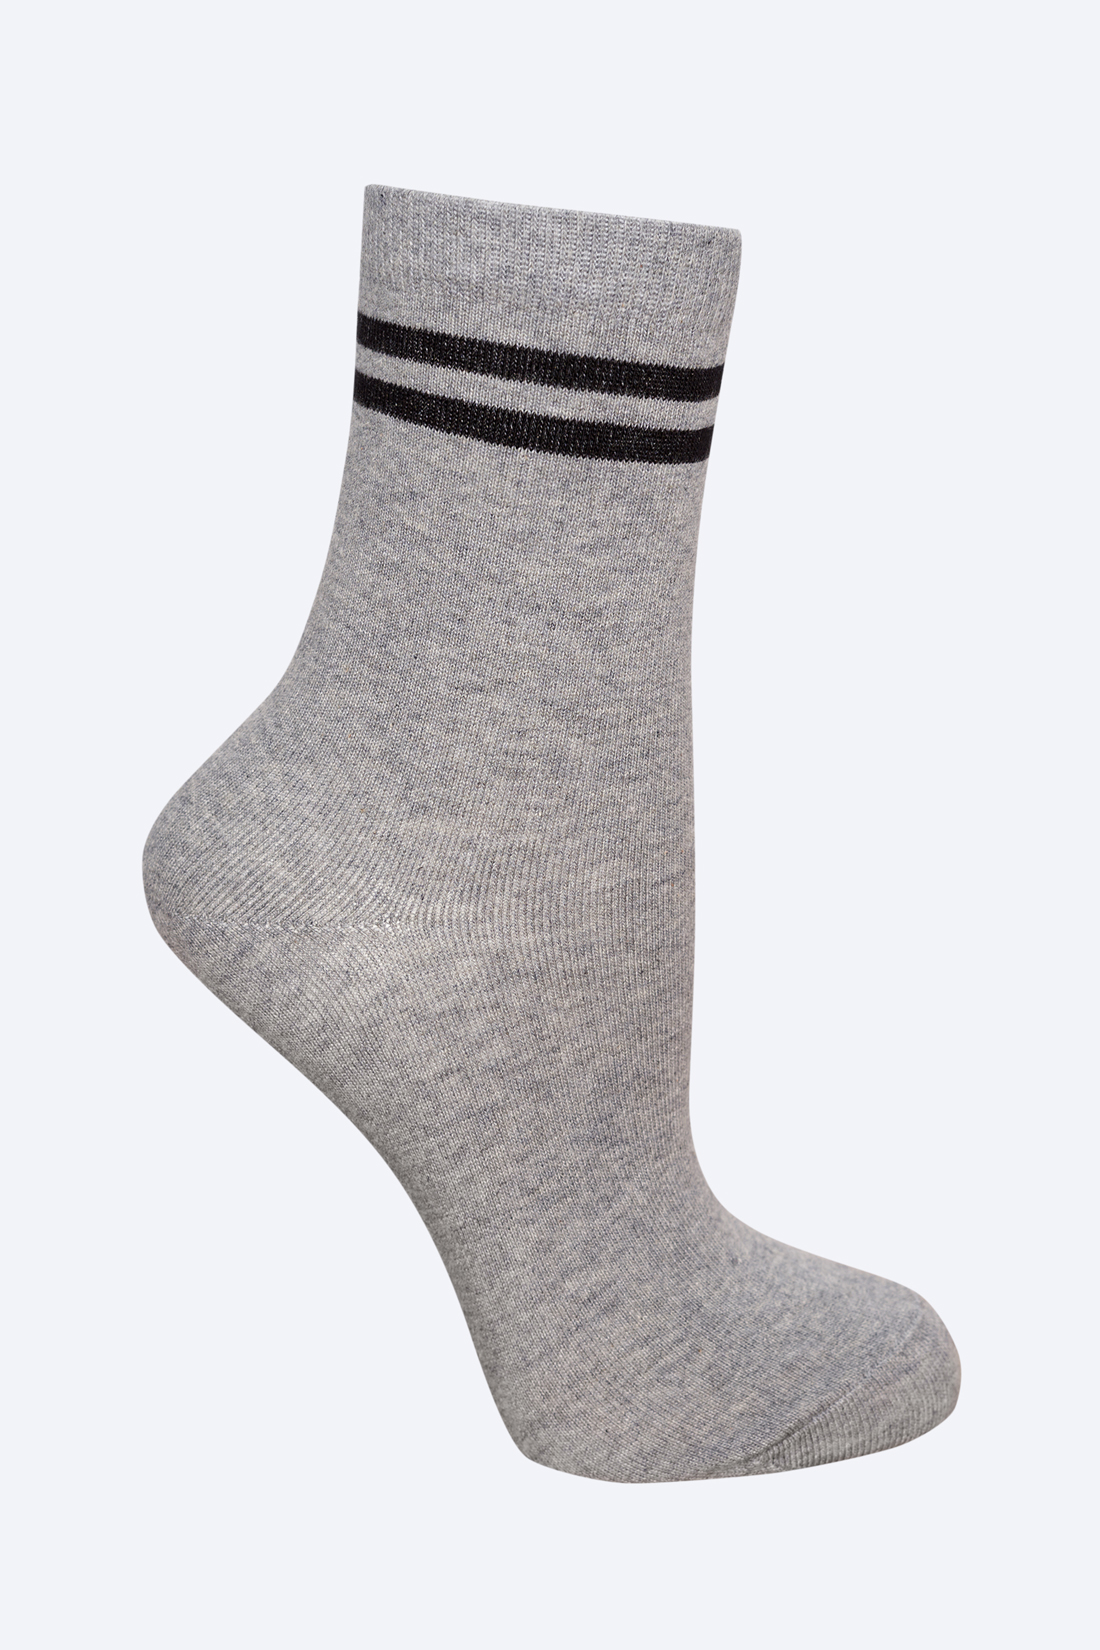 Носки с чёрными полосками (арт. baon B399525), размер 38/40, цвет zircon melange#серый